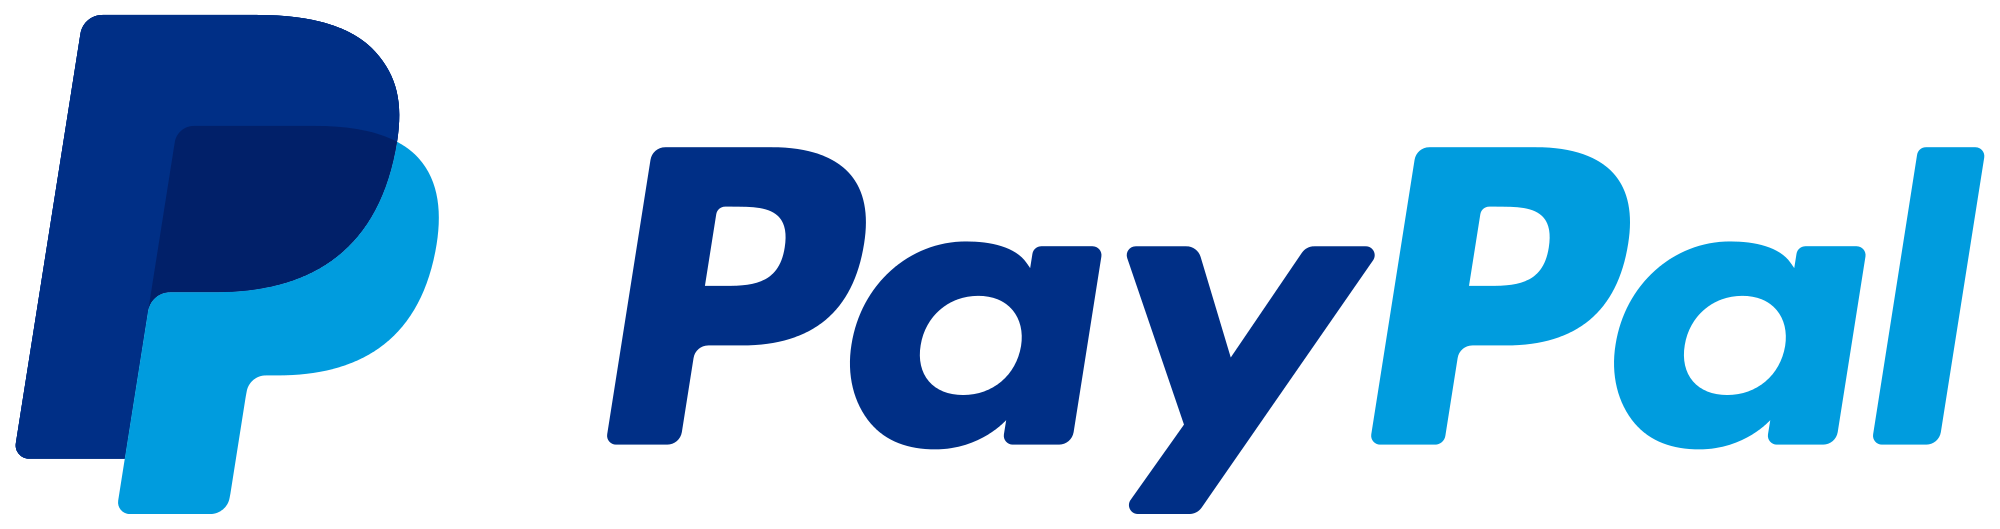 paypal-logo-png-2114